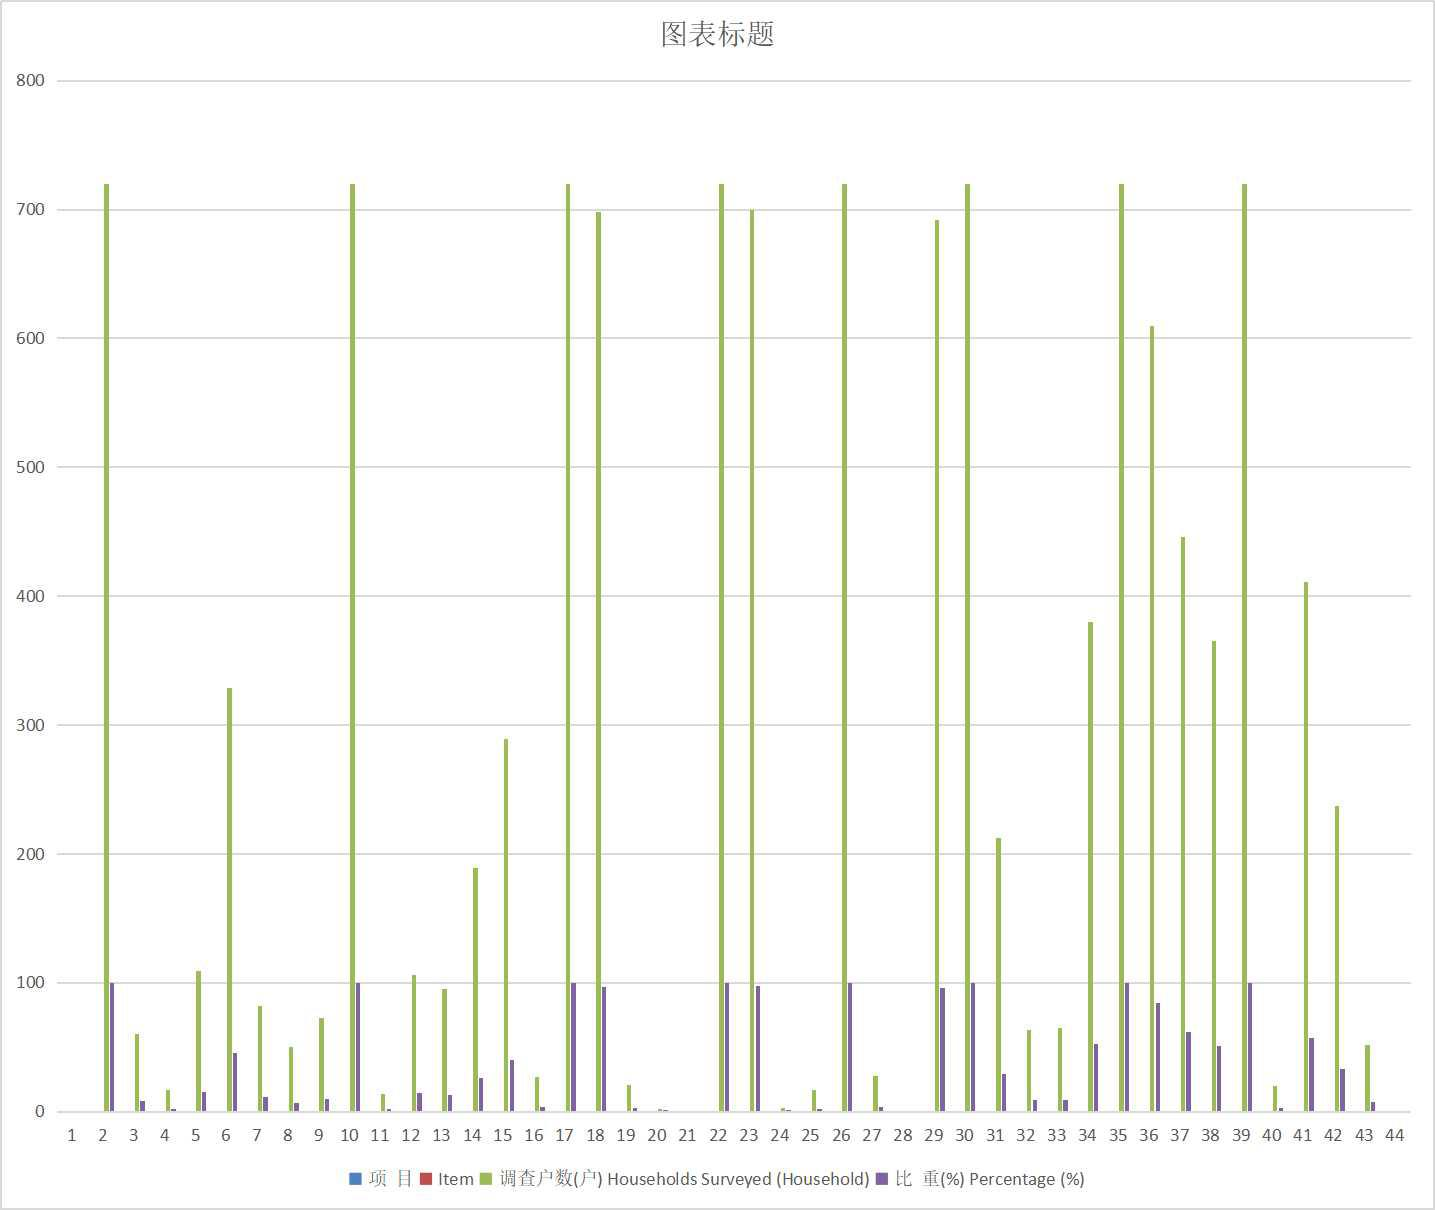 青海省城镇居民住房情况（抽样调查）（2000-2013）